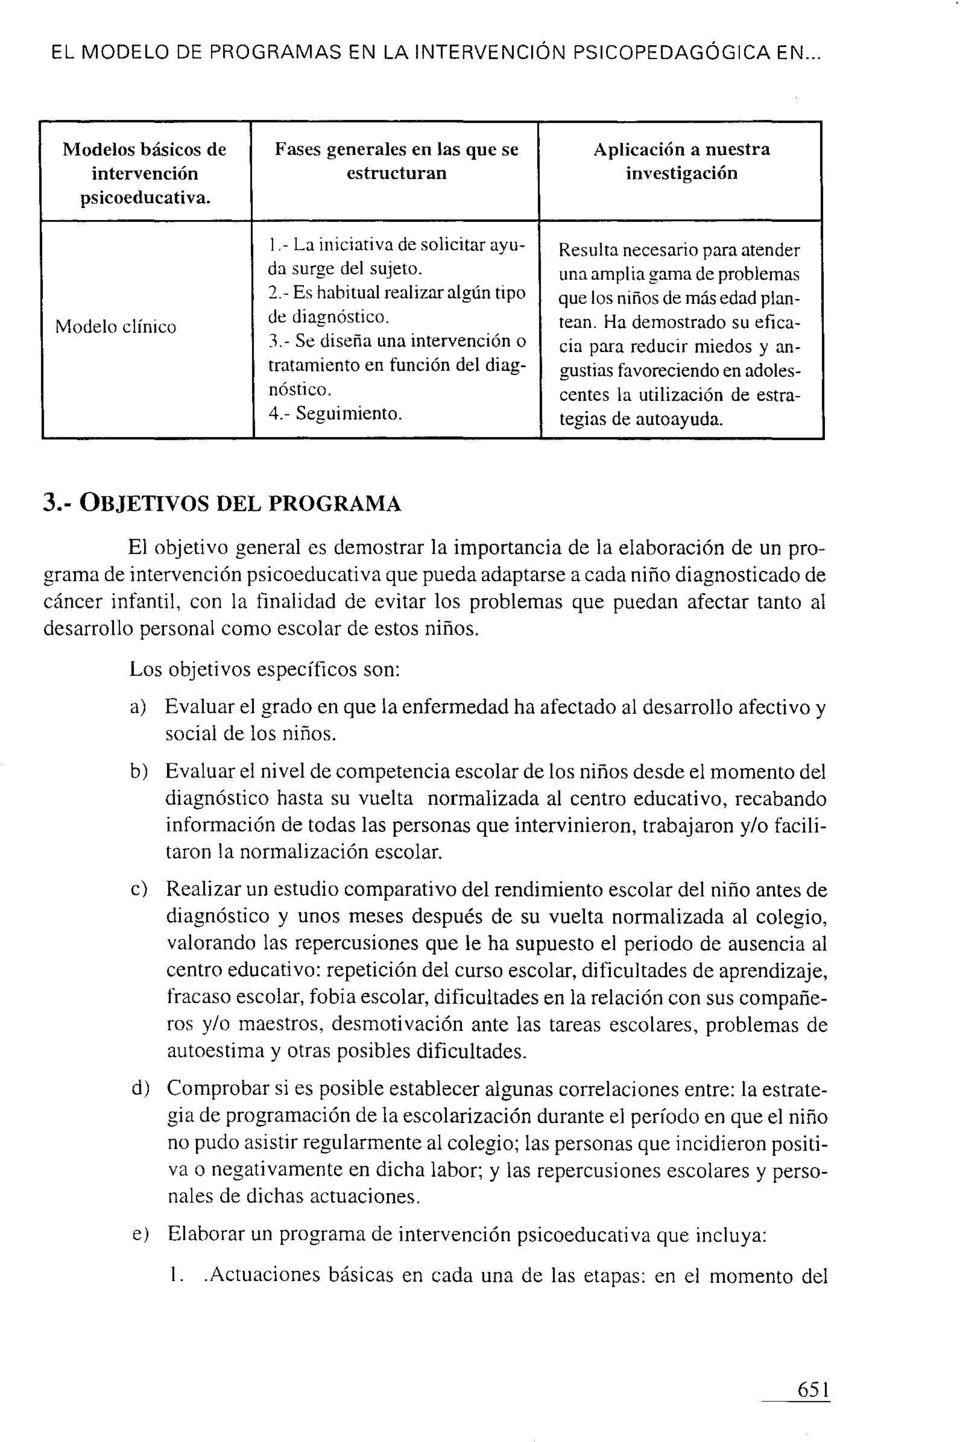 EL MODELO DE PROGRAMAS EN LA INTERVENCIÓN PSICOPEDAGÓGICA EN NIÑOS  DIAGNOSTICADOS DE CÁNCER - PDF Descargar libre